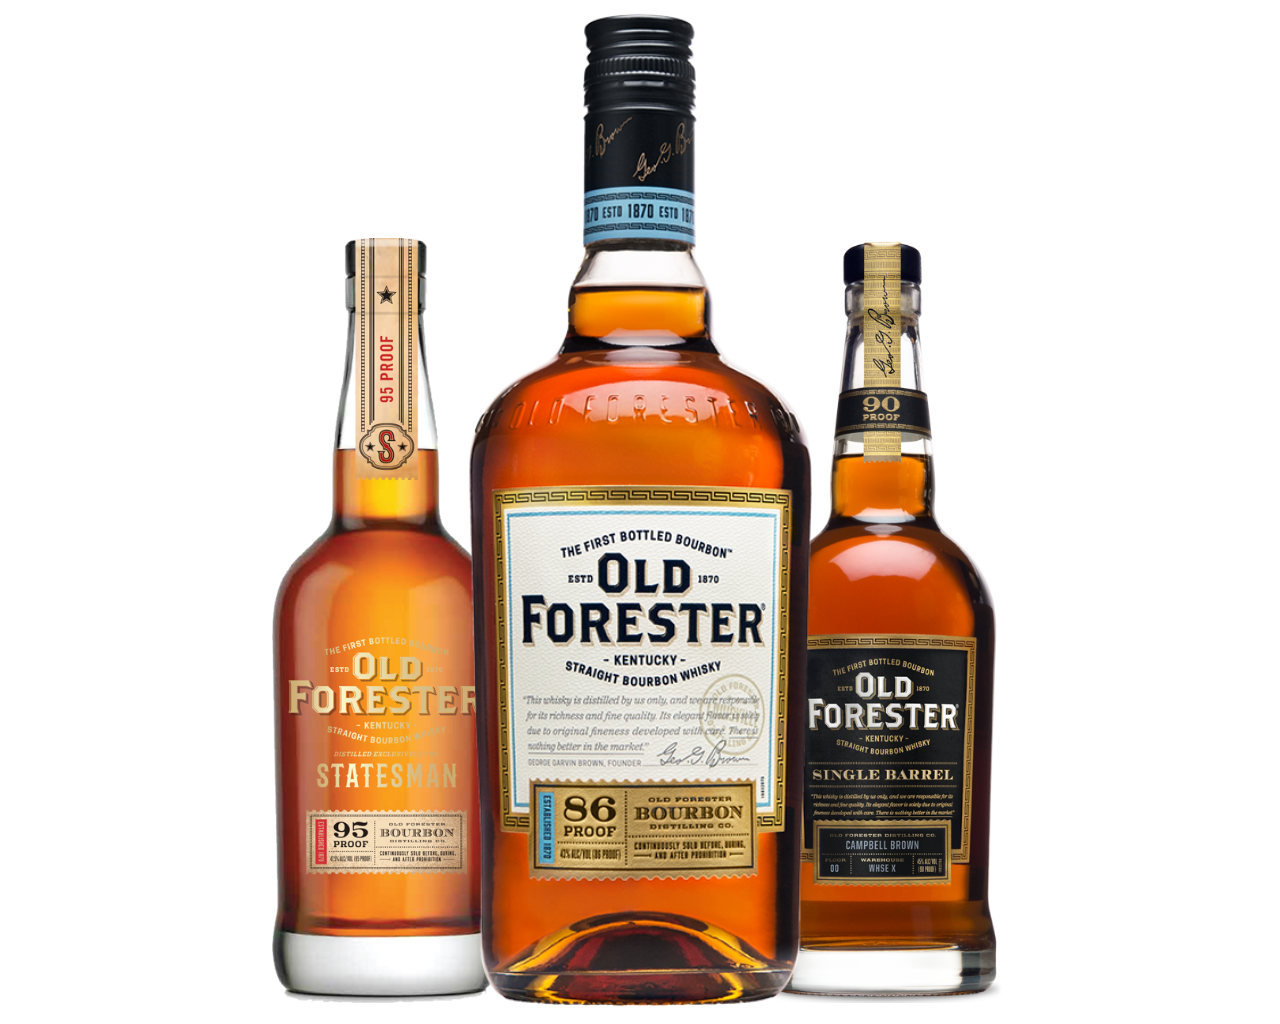 Old Forester bottles